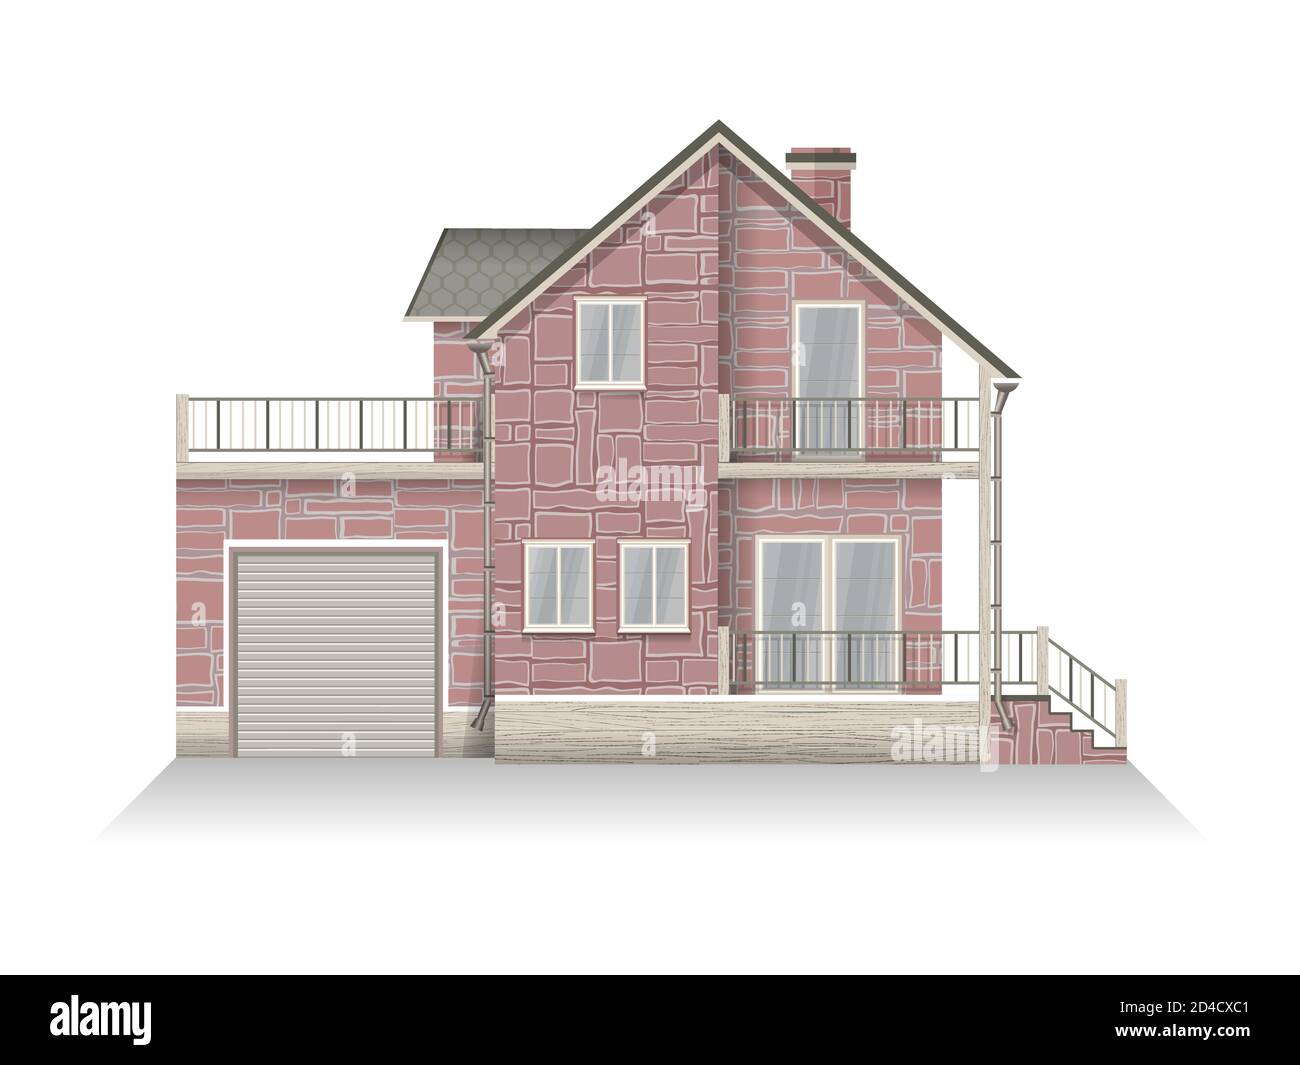 Illustrazione vettoriale di dettagliata casa suburbana famiglia con mansarda e garage. Casa in mattoni. Isolato su sfondo bianco. Illustrazione Vettoriale